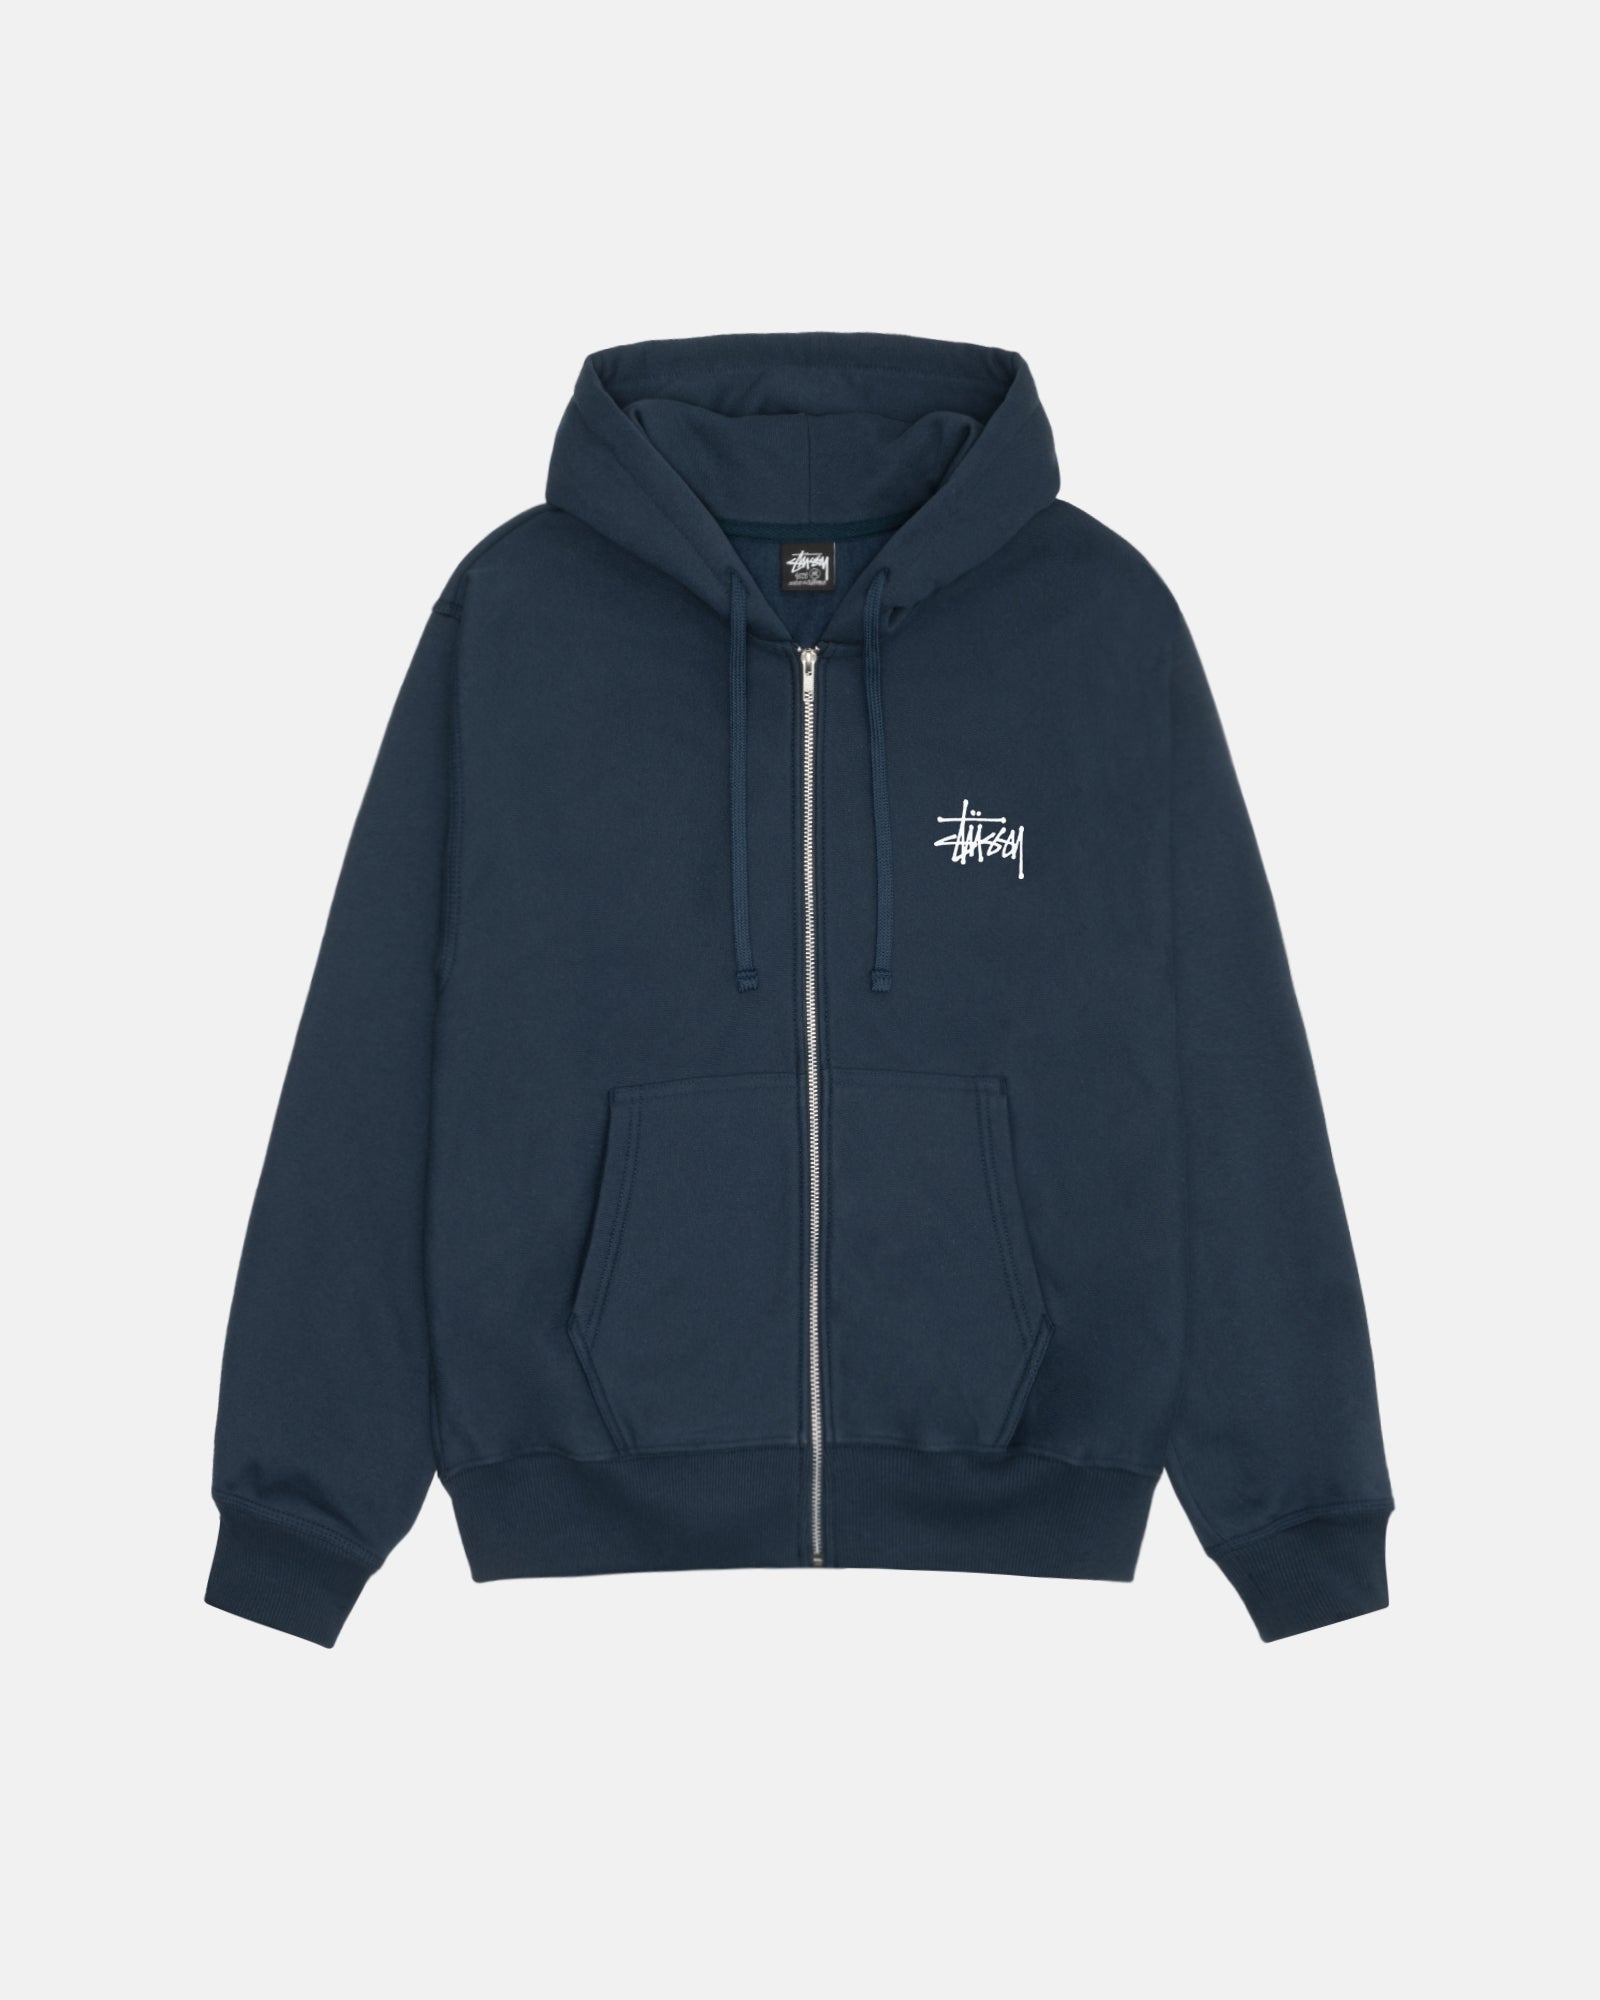 Stussy zip hoodie